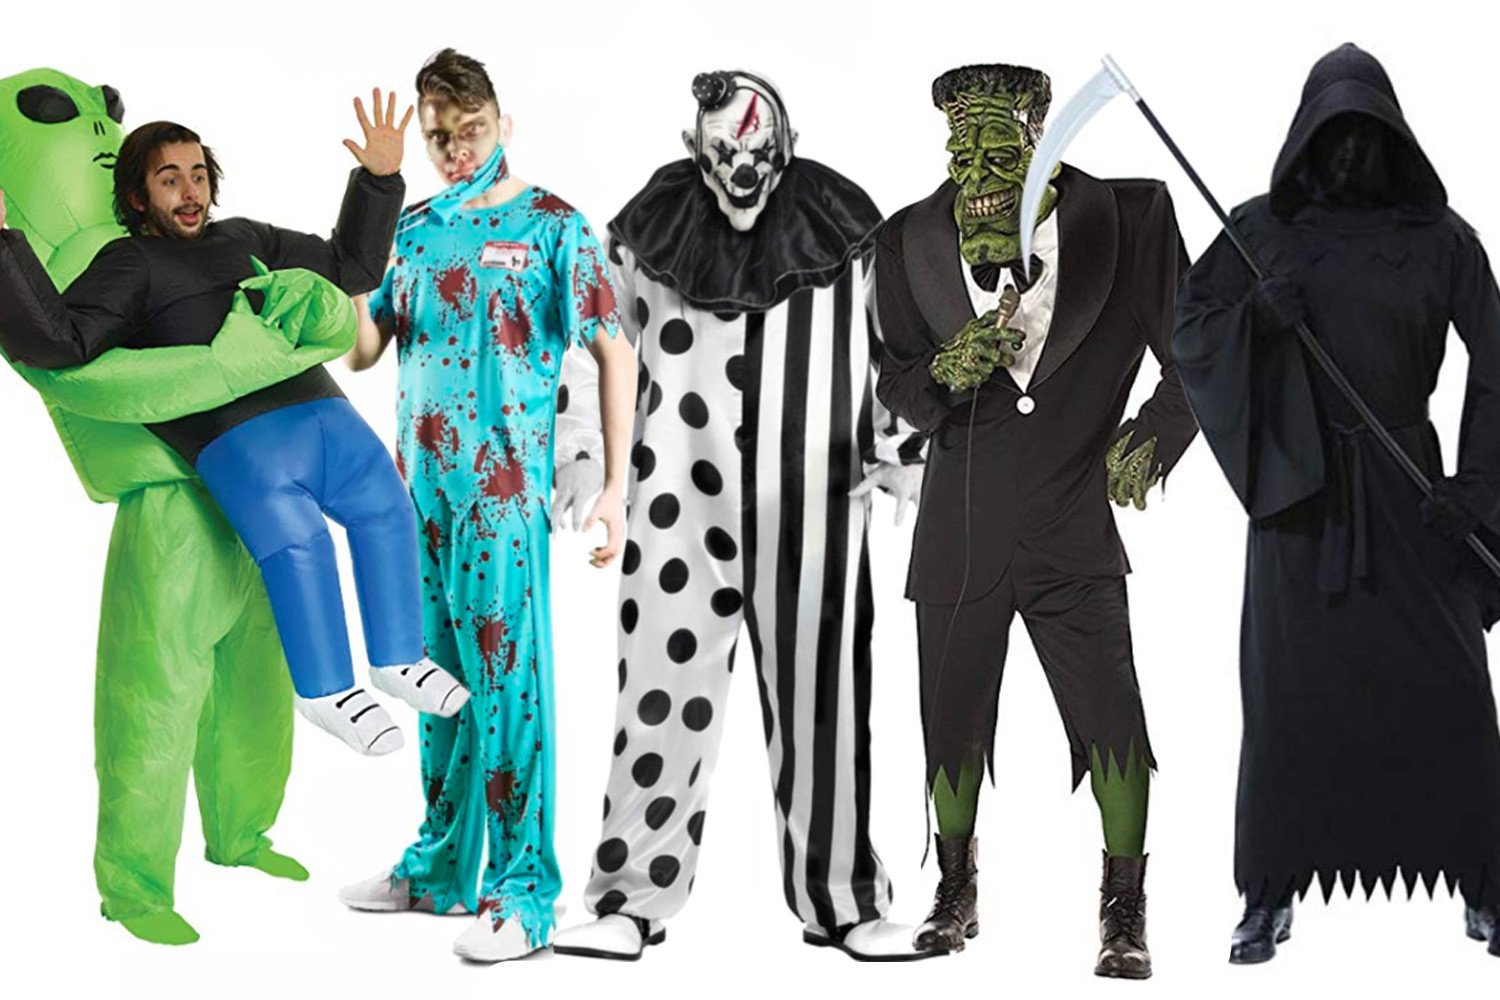 dk-comp-men-halloween-costumes - Study Breaks. dk-comp-men-halloween-costum...